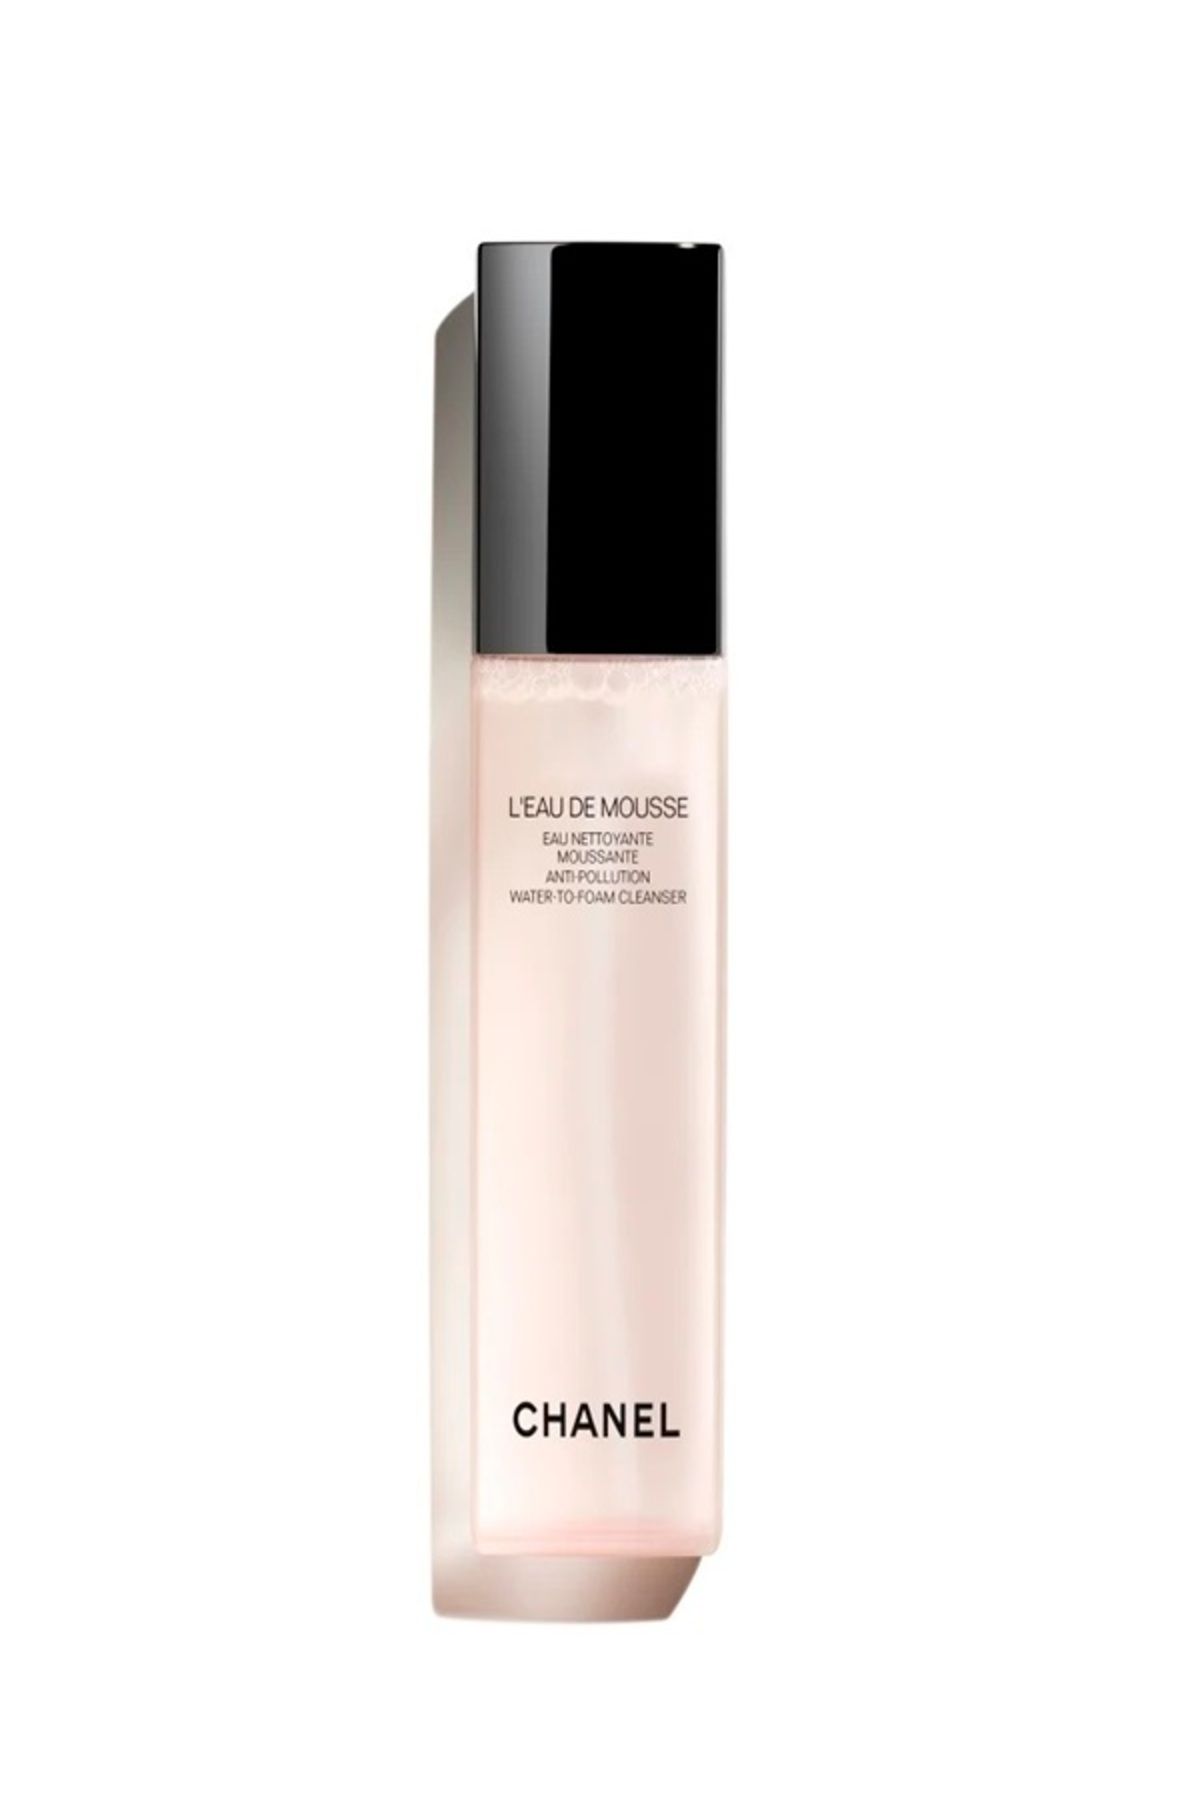 Chanel L'EAU DE MOUSSE ÇEVRE KİRLİLİĞİ KARŞITI KÖPÜK TEMİZLEYİCİ 150 ml